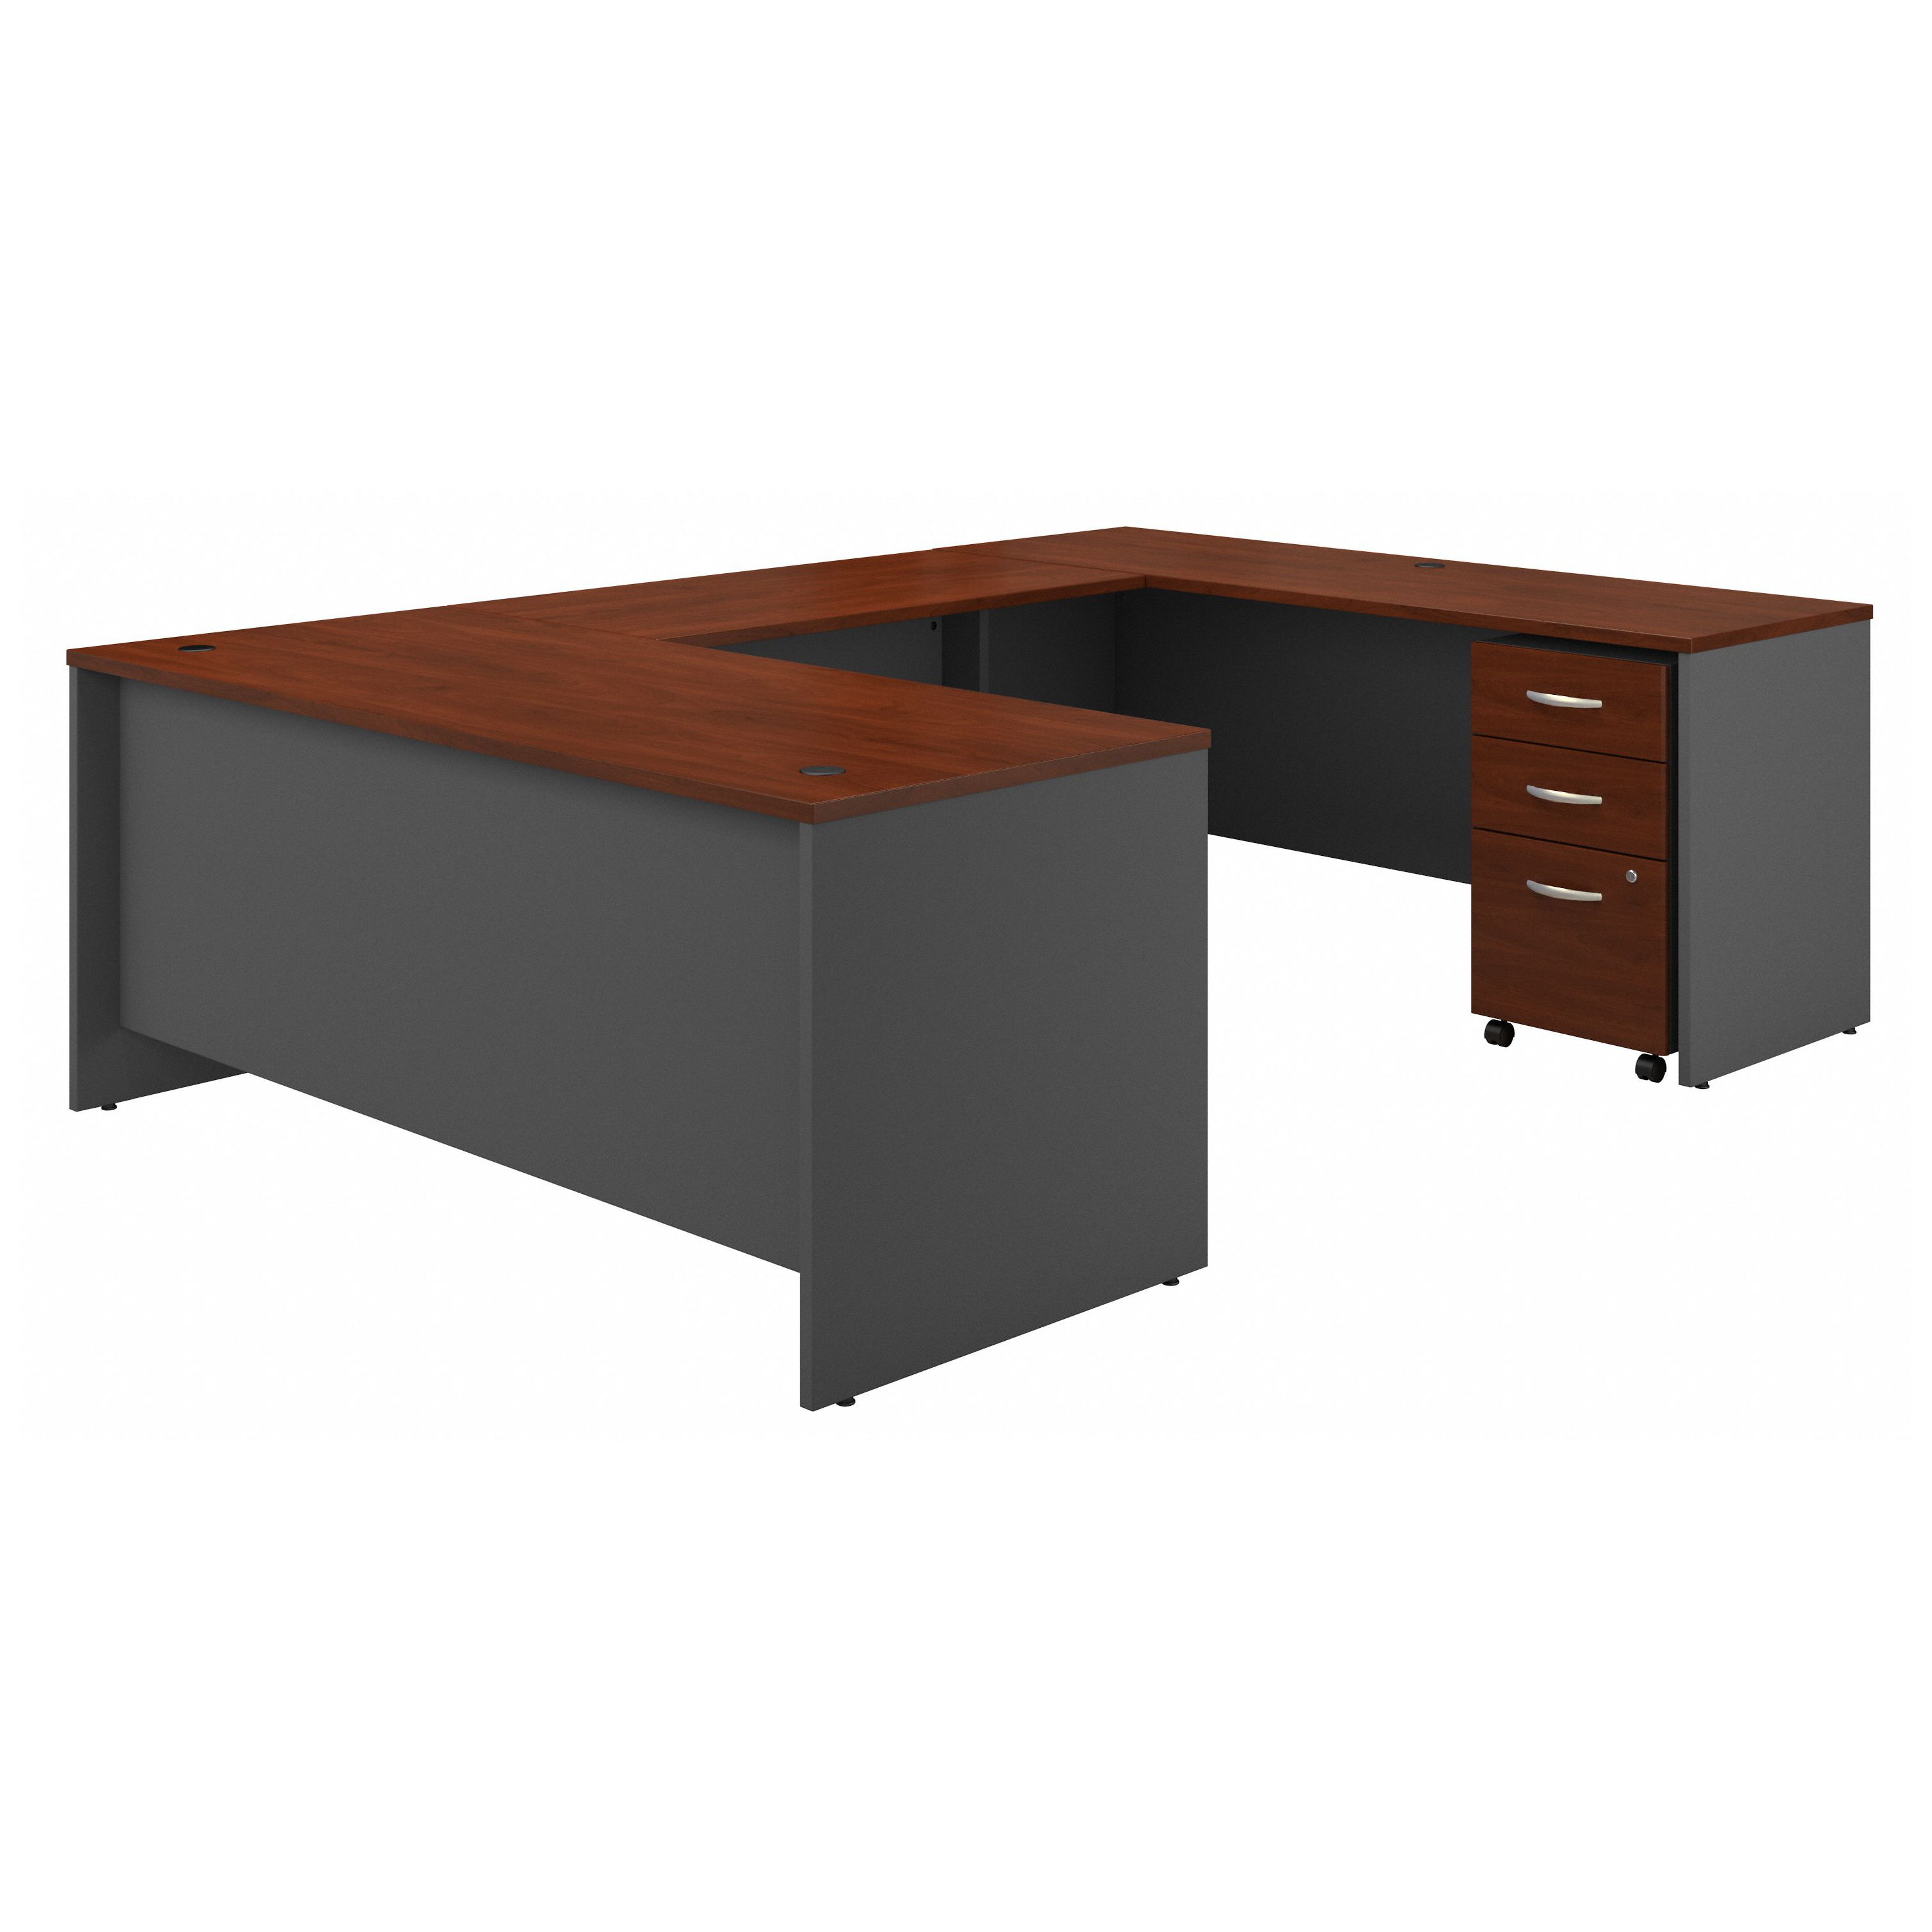 Shop Bush Business Furniture Series C 72W x 30D U Shaped Desk with Mobile File Cabinet 02 SRC091HCSU #color_hansen cherry/graphite gray